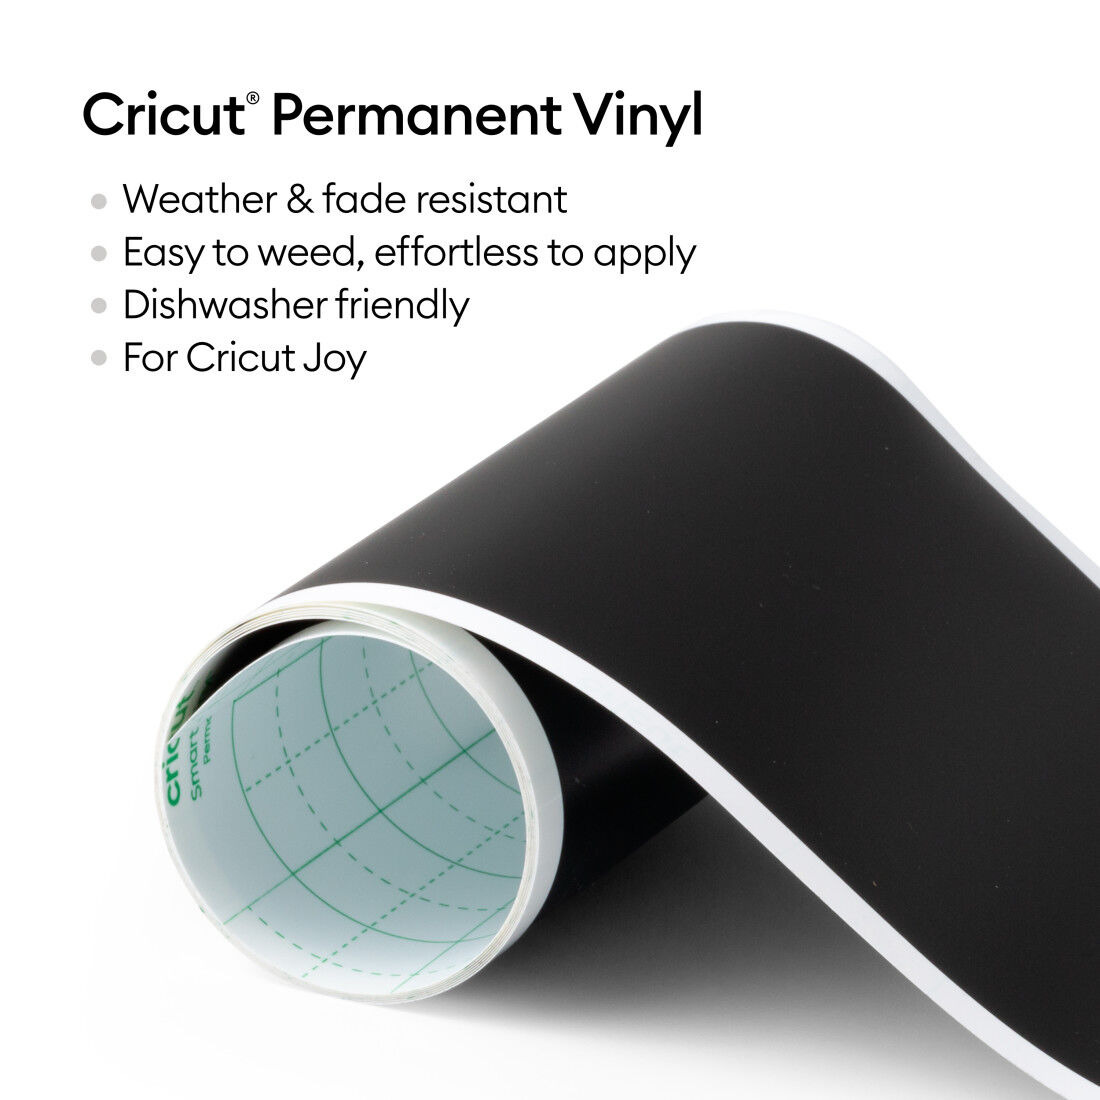 Cricut Joy Smart Vinyl - Permanent Vinyl